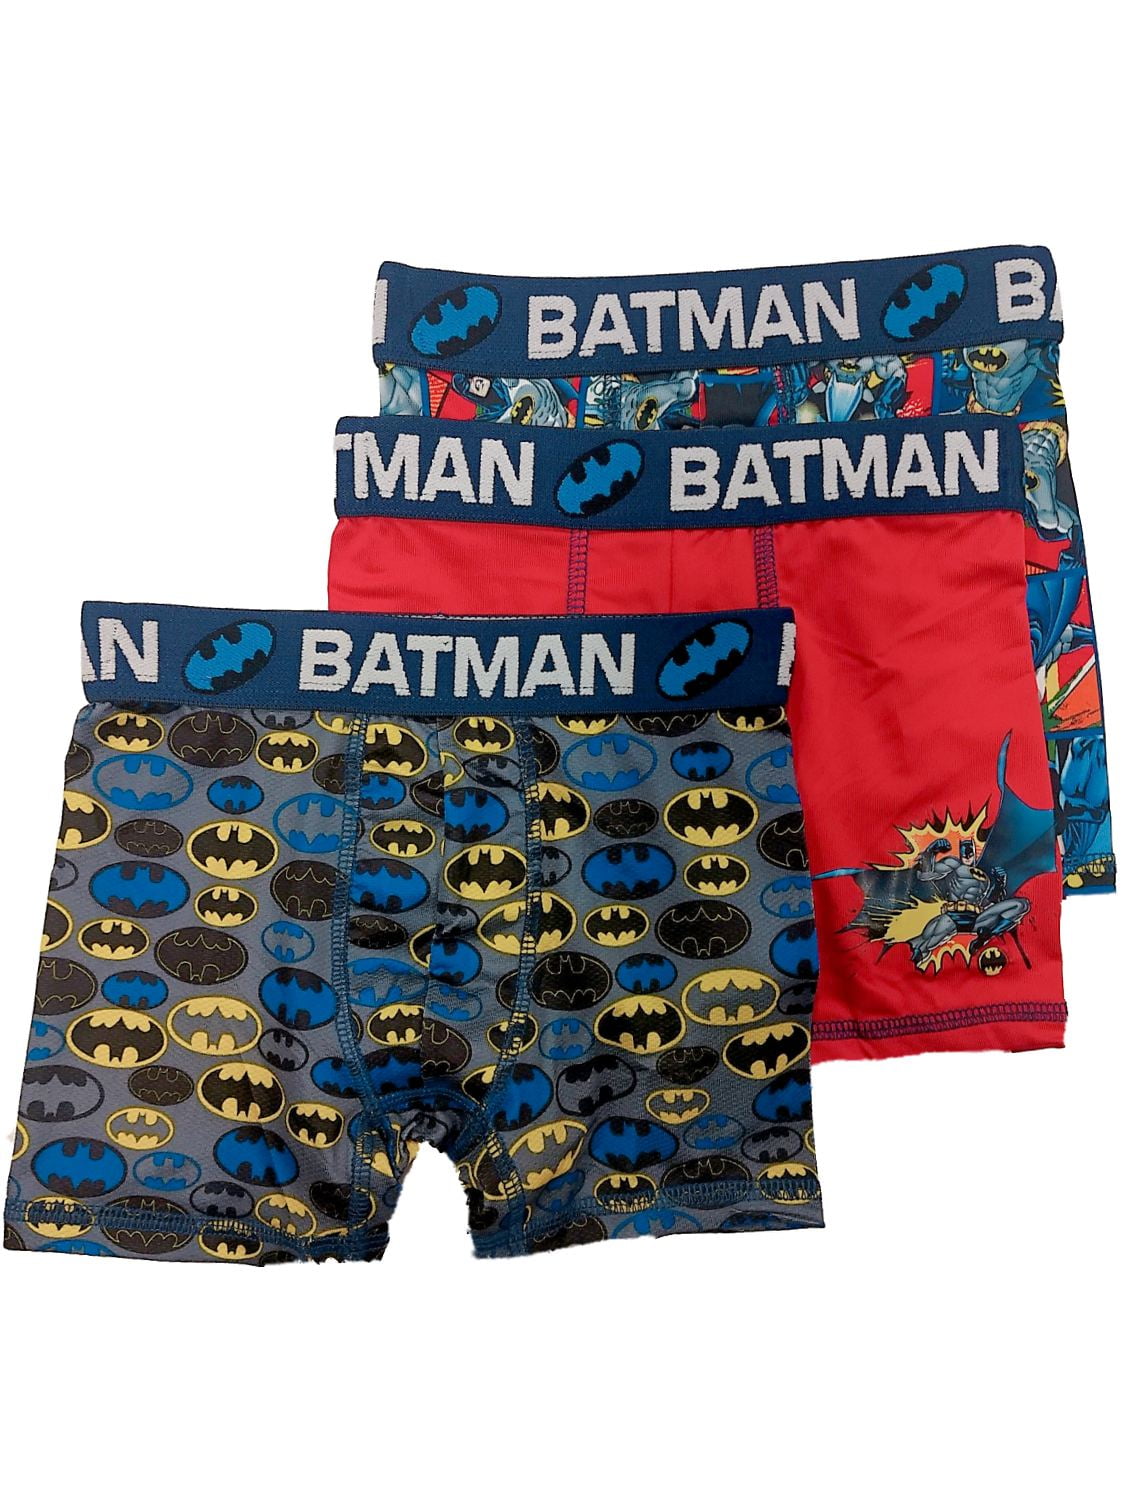 DC Comics Batman Boys 2 Pack Boxer Shorts Kids Underwear Briefs Boxers Size 